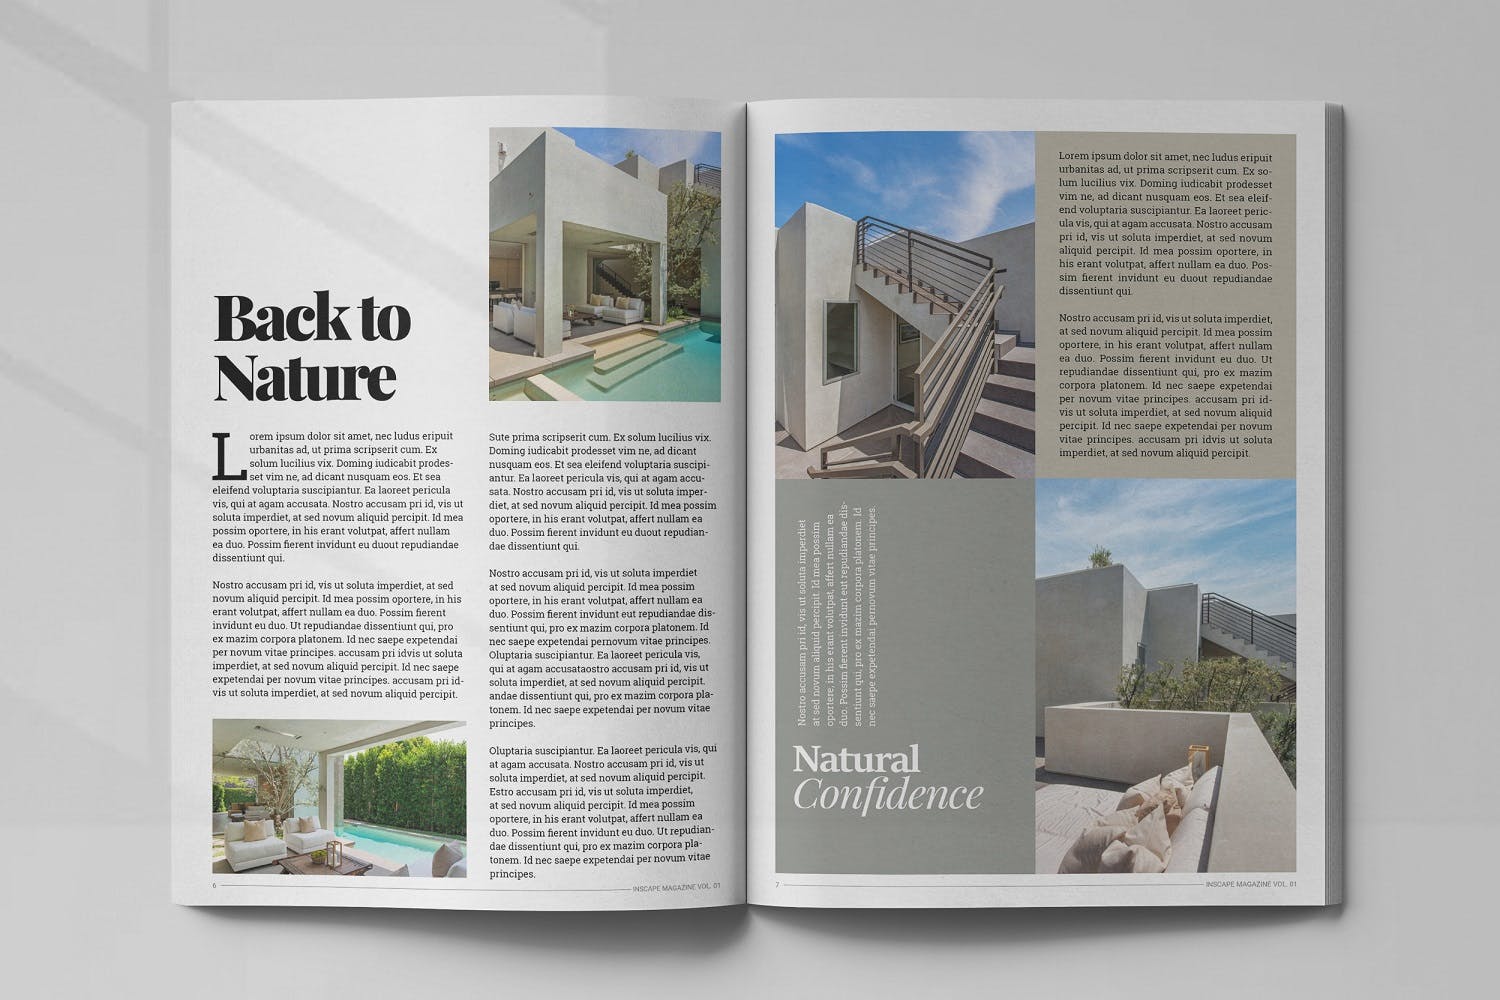 室内设计主题蚂蚁素材精选杂志排版设计模板 Inscape Interior Magazine插图(3)